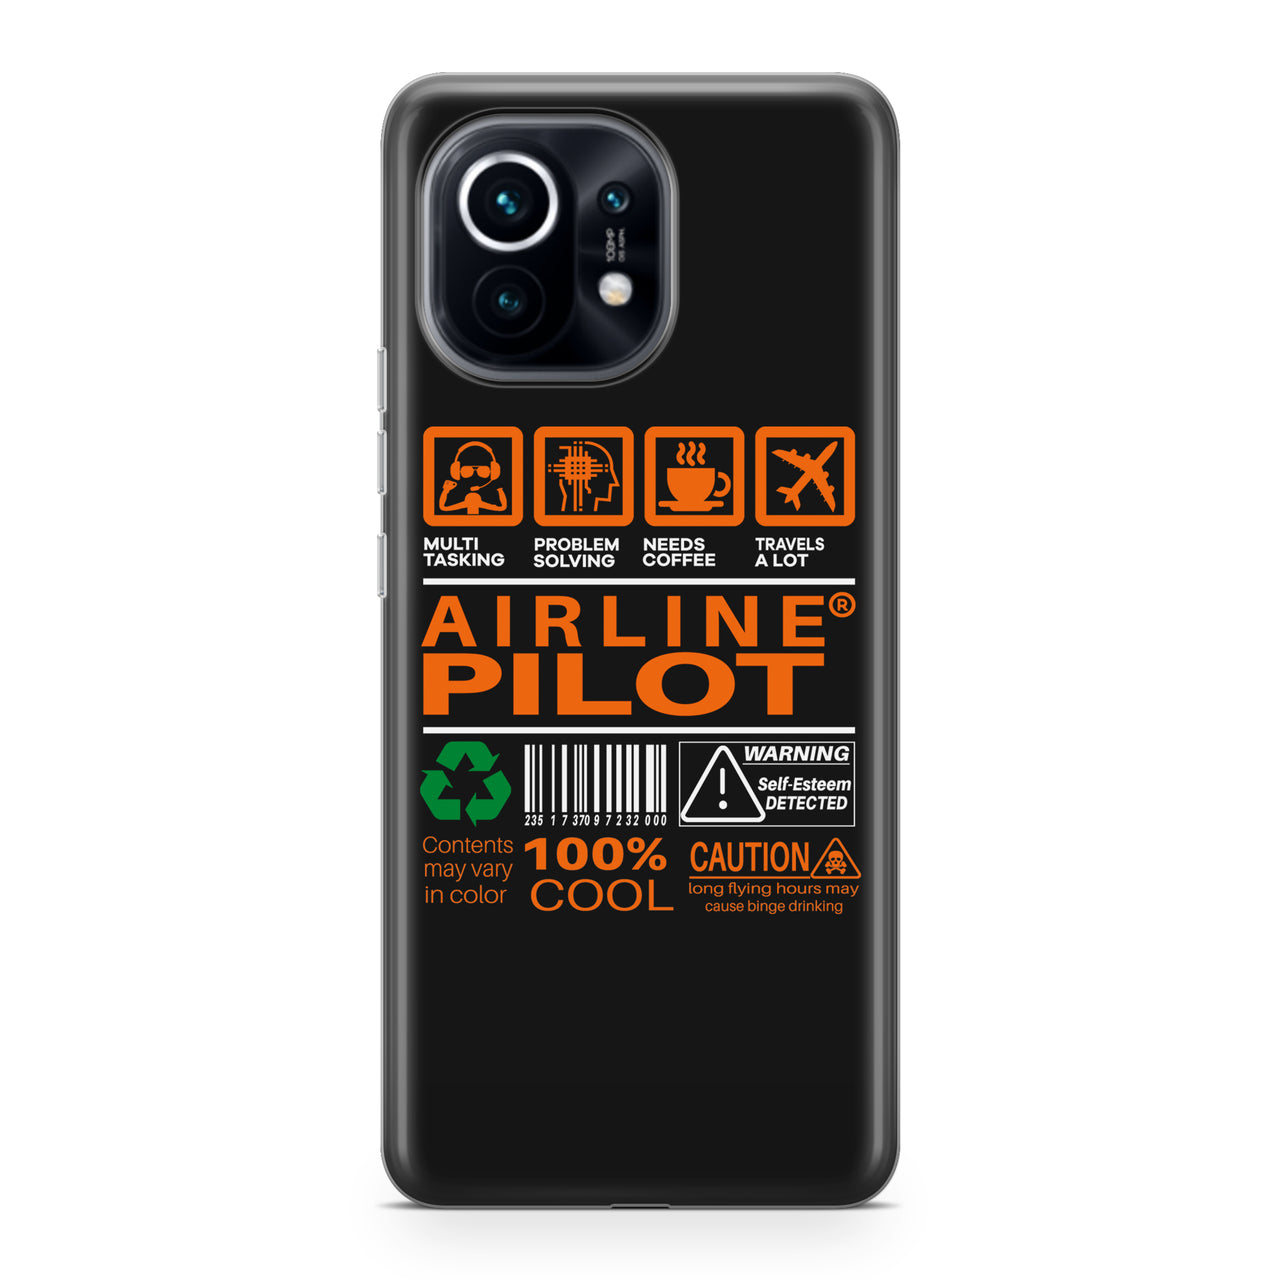 Airline Pilot Label Designed Xiaomi Cases